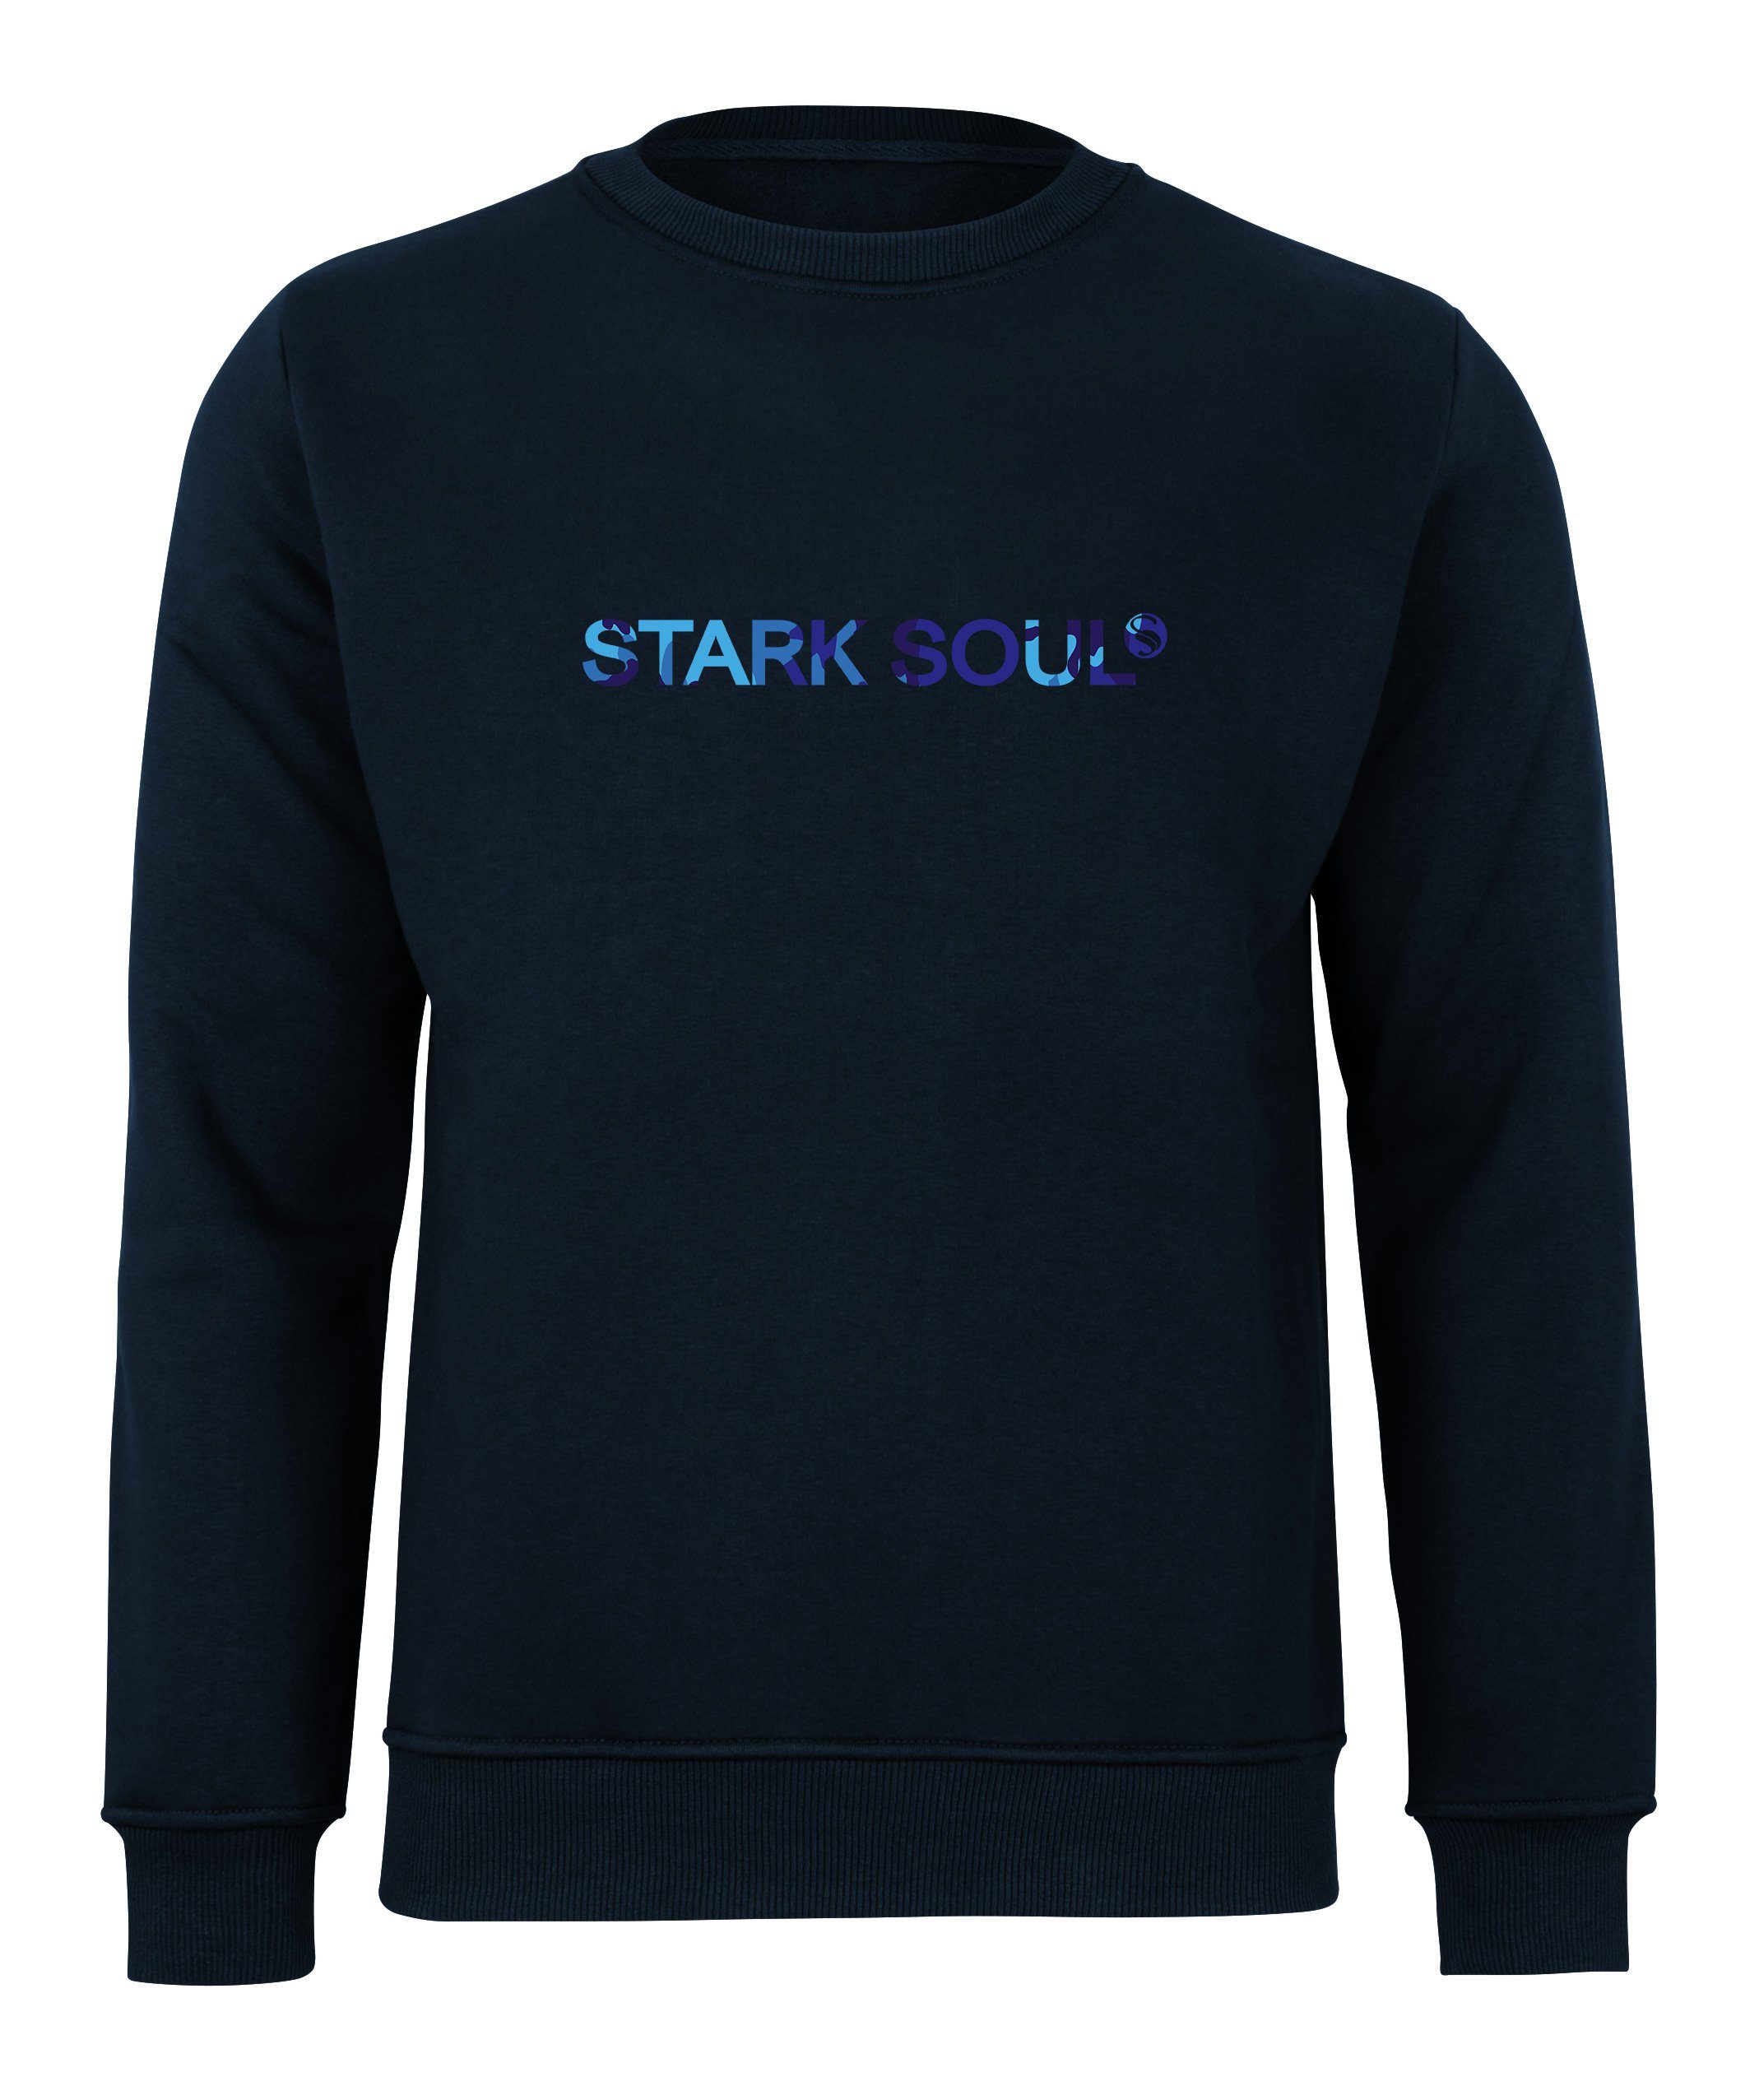 Stark French-Terry-Rundhals-Sweatshirt, Soul® "Stark Innen Sweatshirt Soul®"-Schriftzug Marine-Blau in Camouflage-Optik angeraut mit